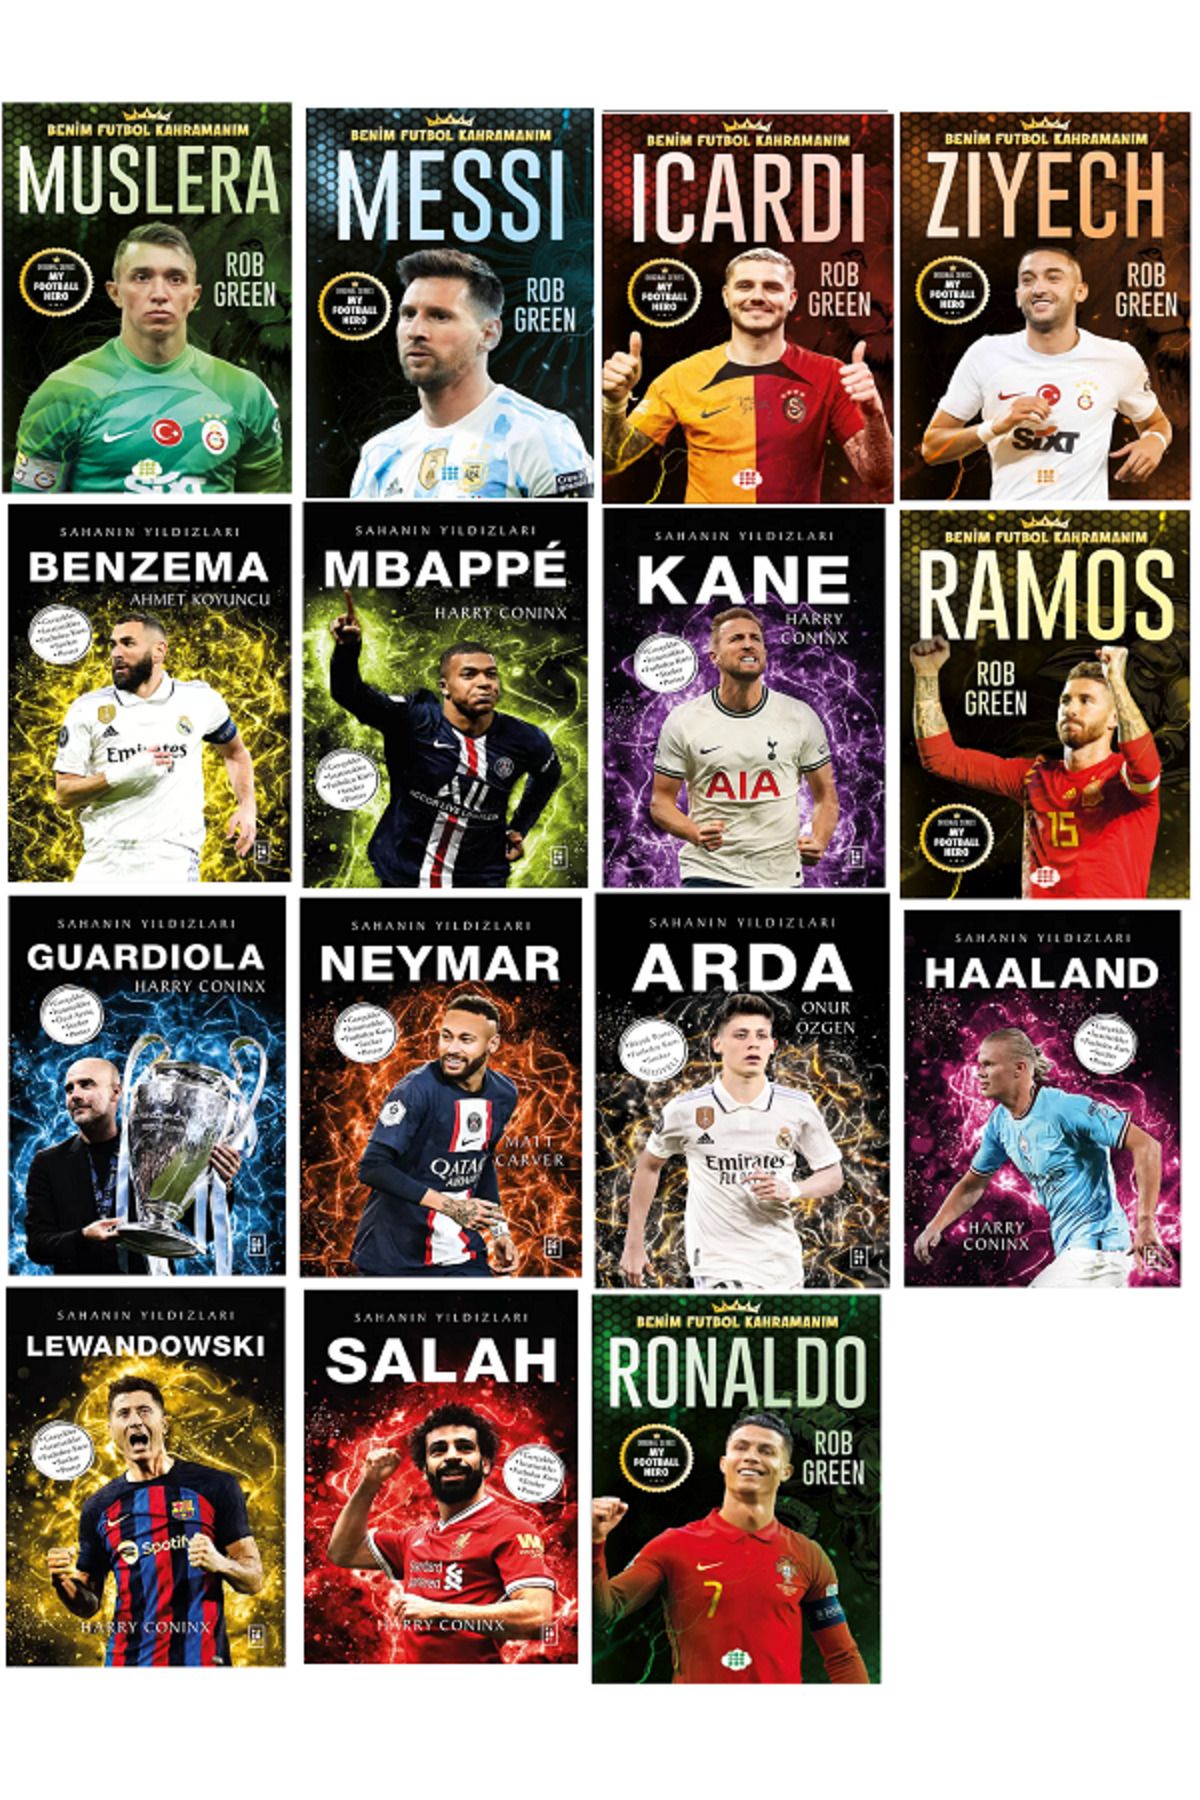 Efsane Yayınları Sahanın Yıldızları - Benim Futbol Kahramanım RONALDO Futbolcu Kartı Poster HEDİYELİ Toplam 15 KİTAP